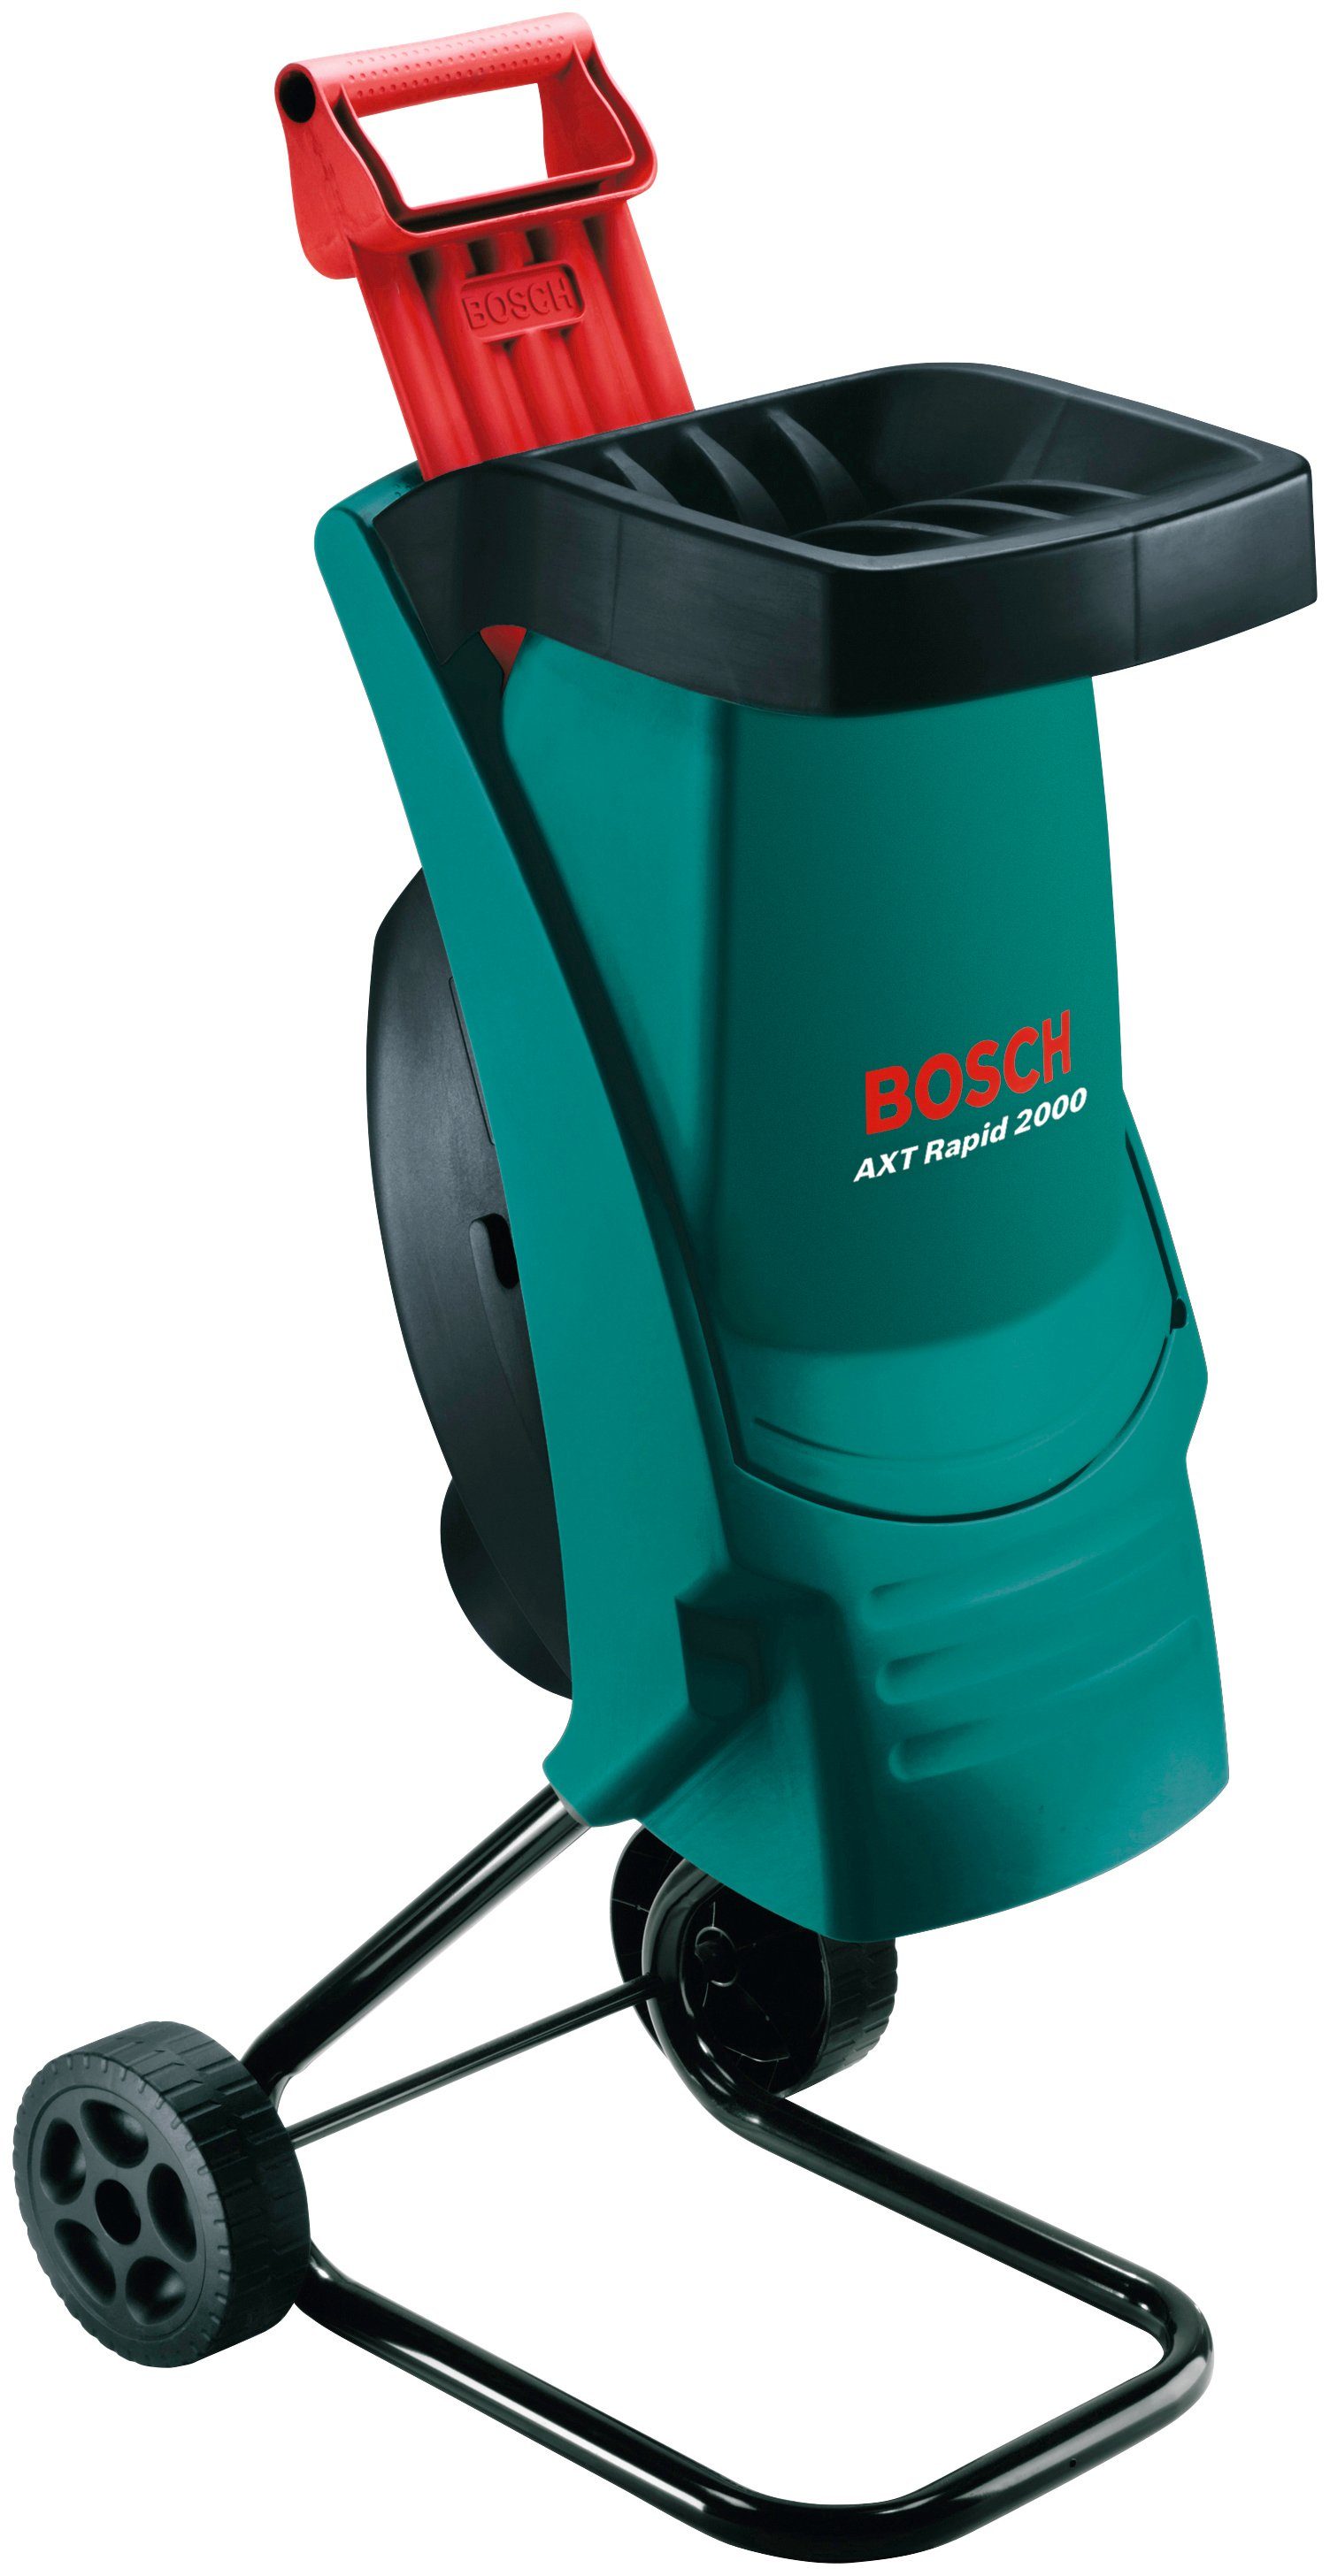 Bosch Home & Garden Messerhäcksler AXT Rapid 2000, 3,5 cm max. Astdurchmesser